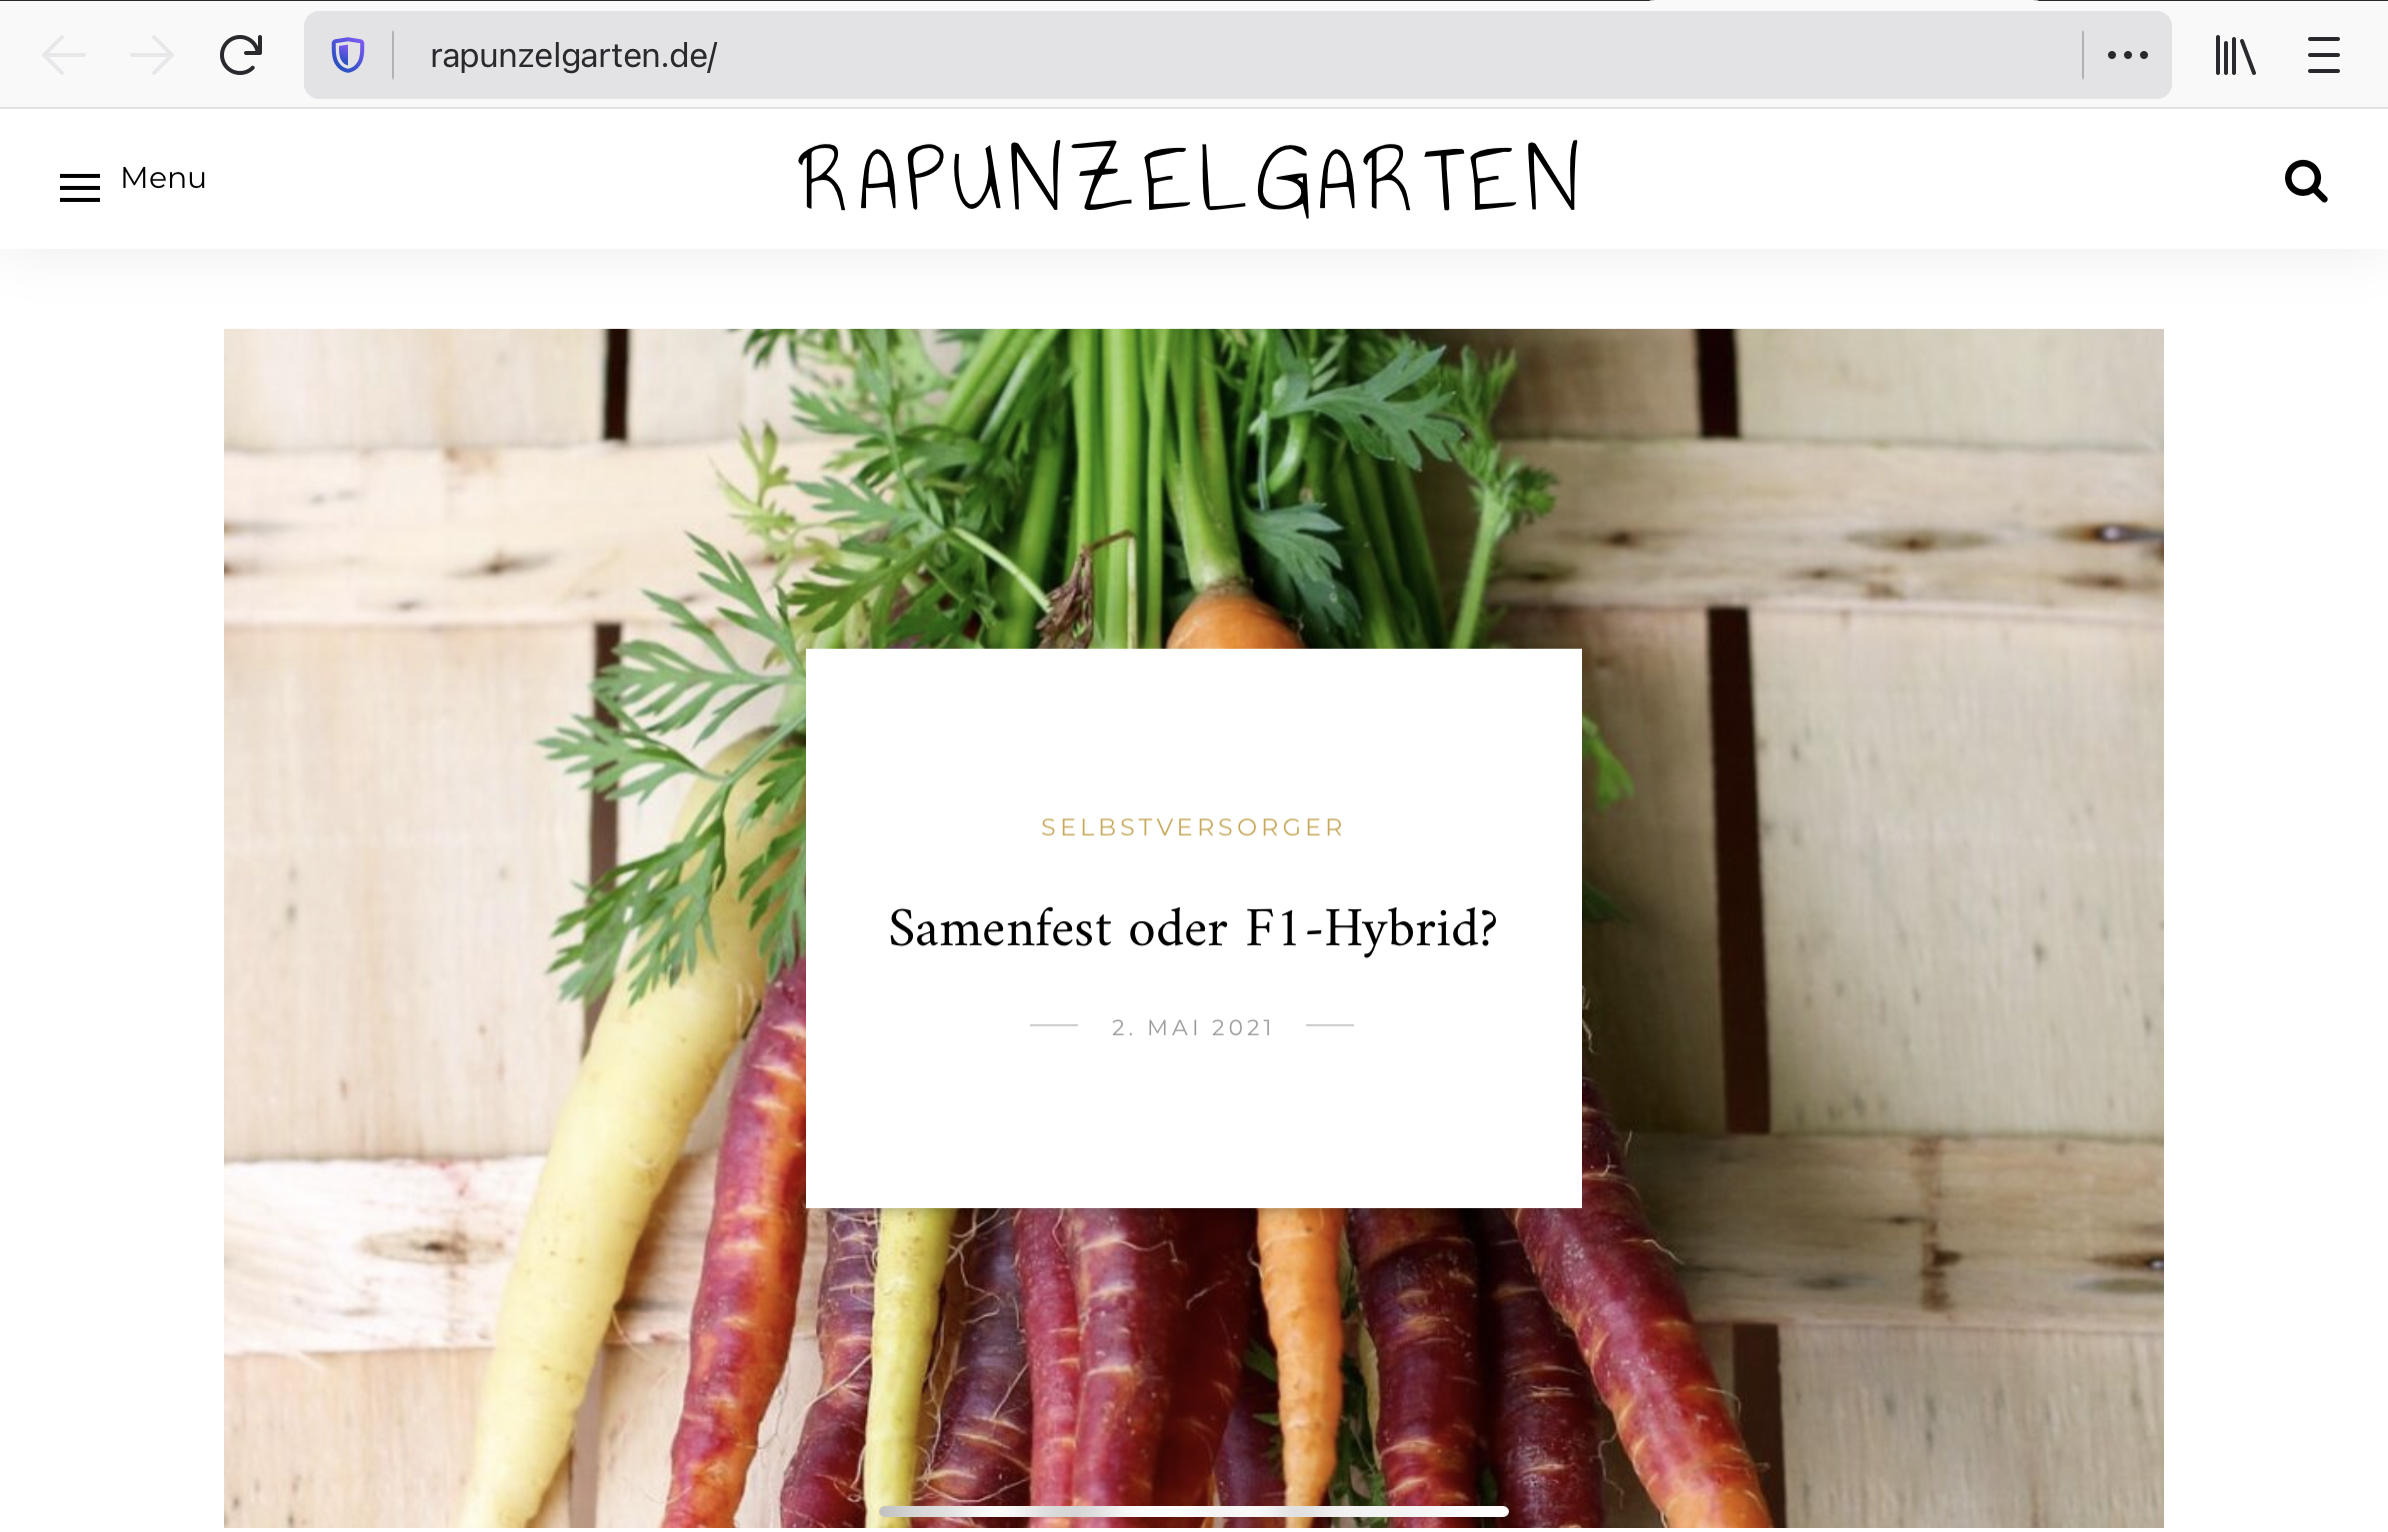 Rapunzelgarten